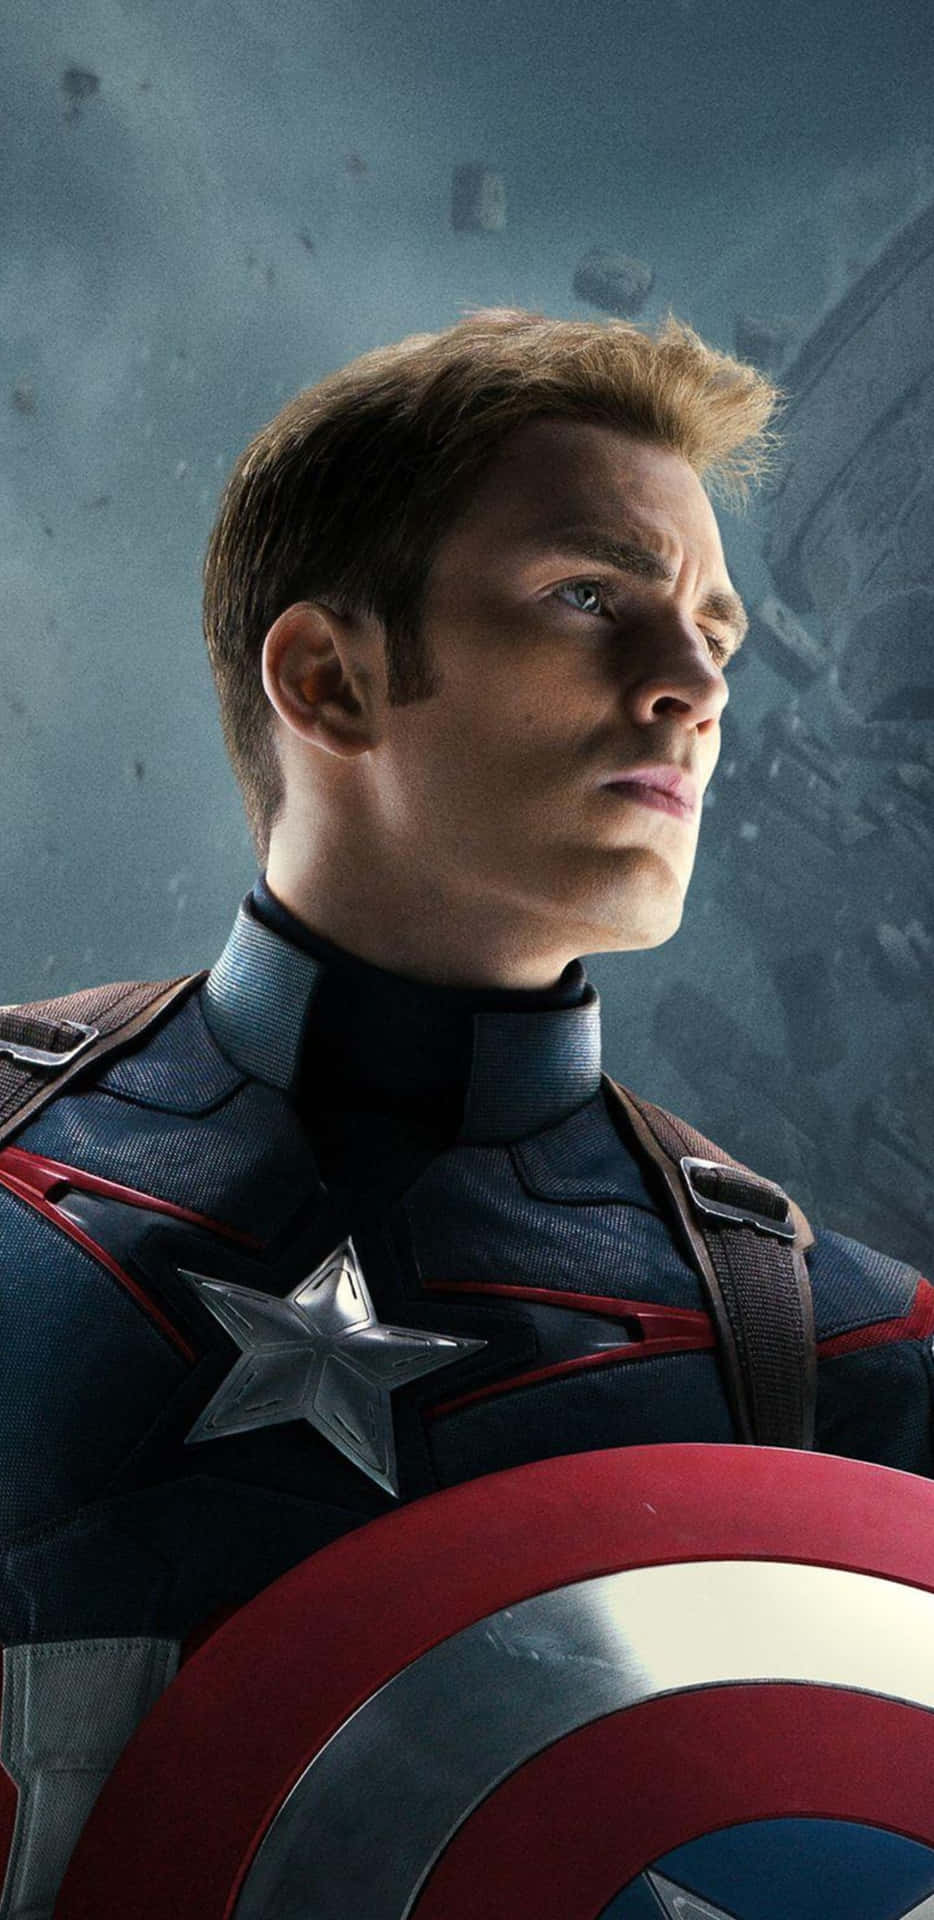 Pixel3xl Bakgrundsbild Av Captain America Från Avengers Age Of Ultron.